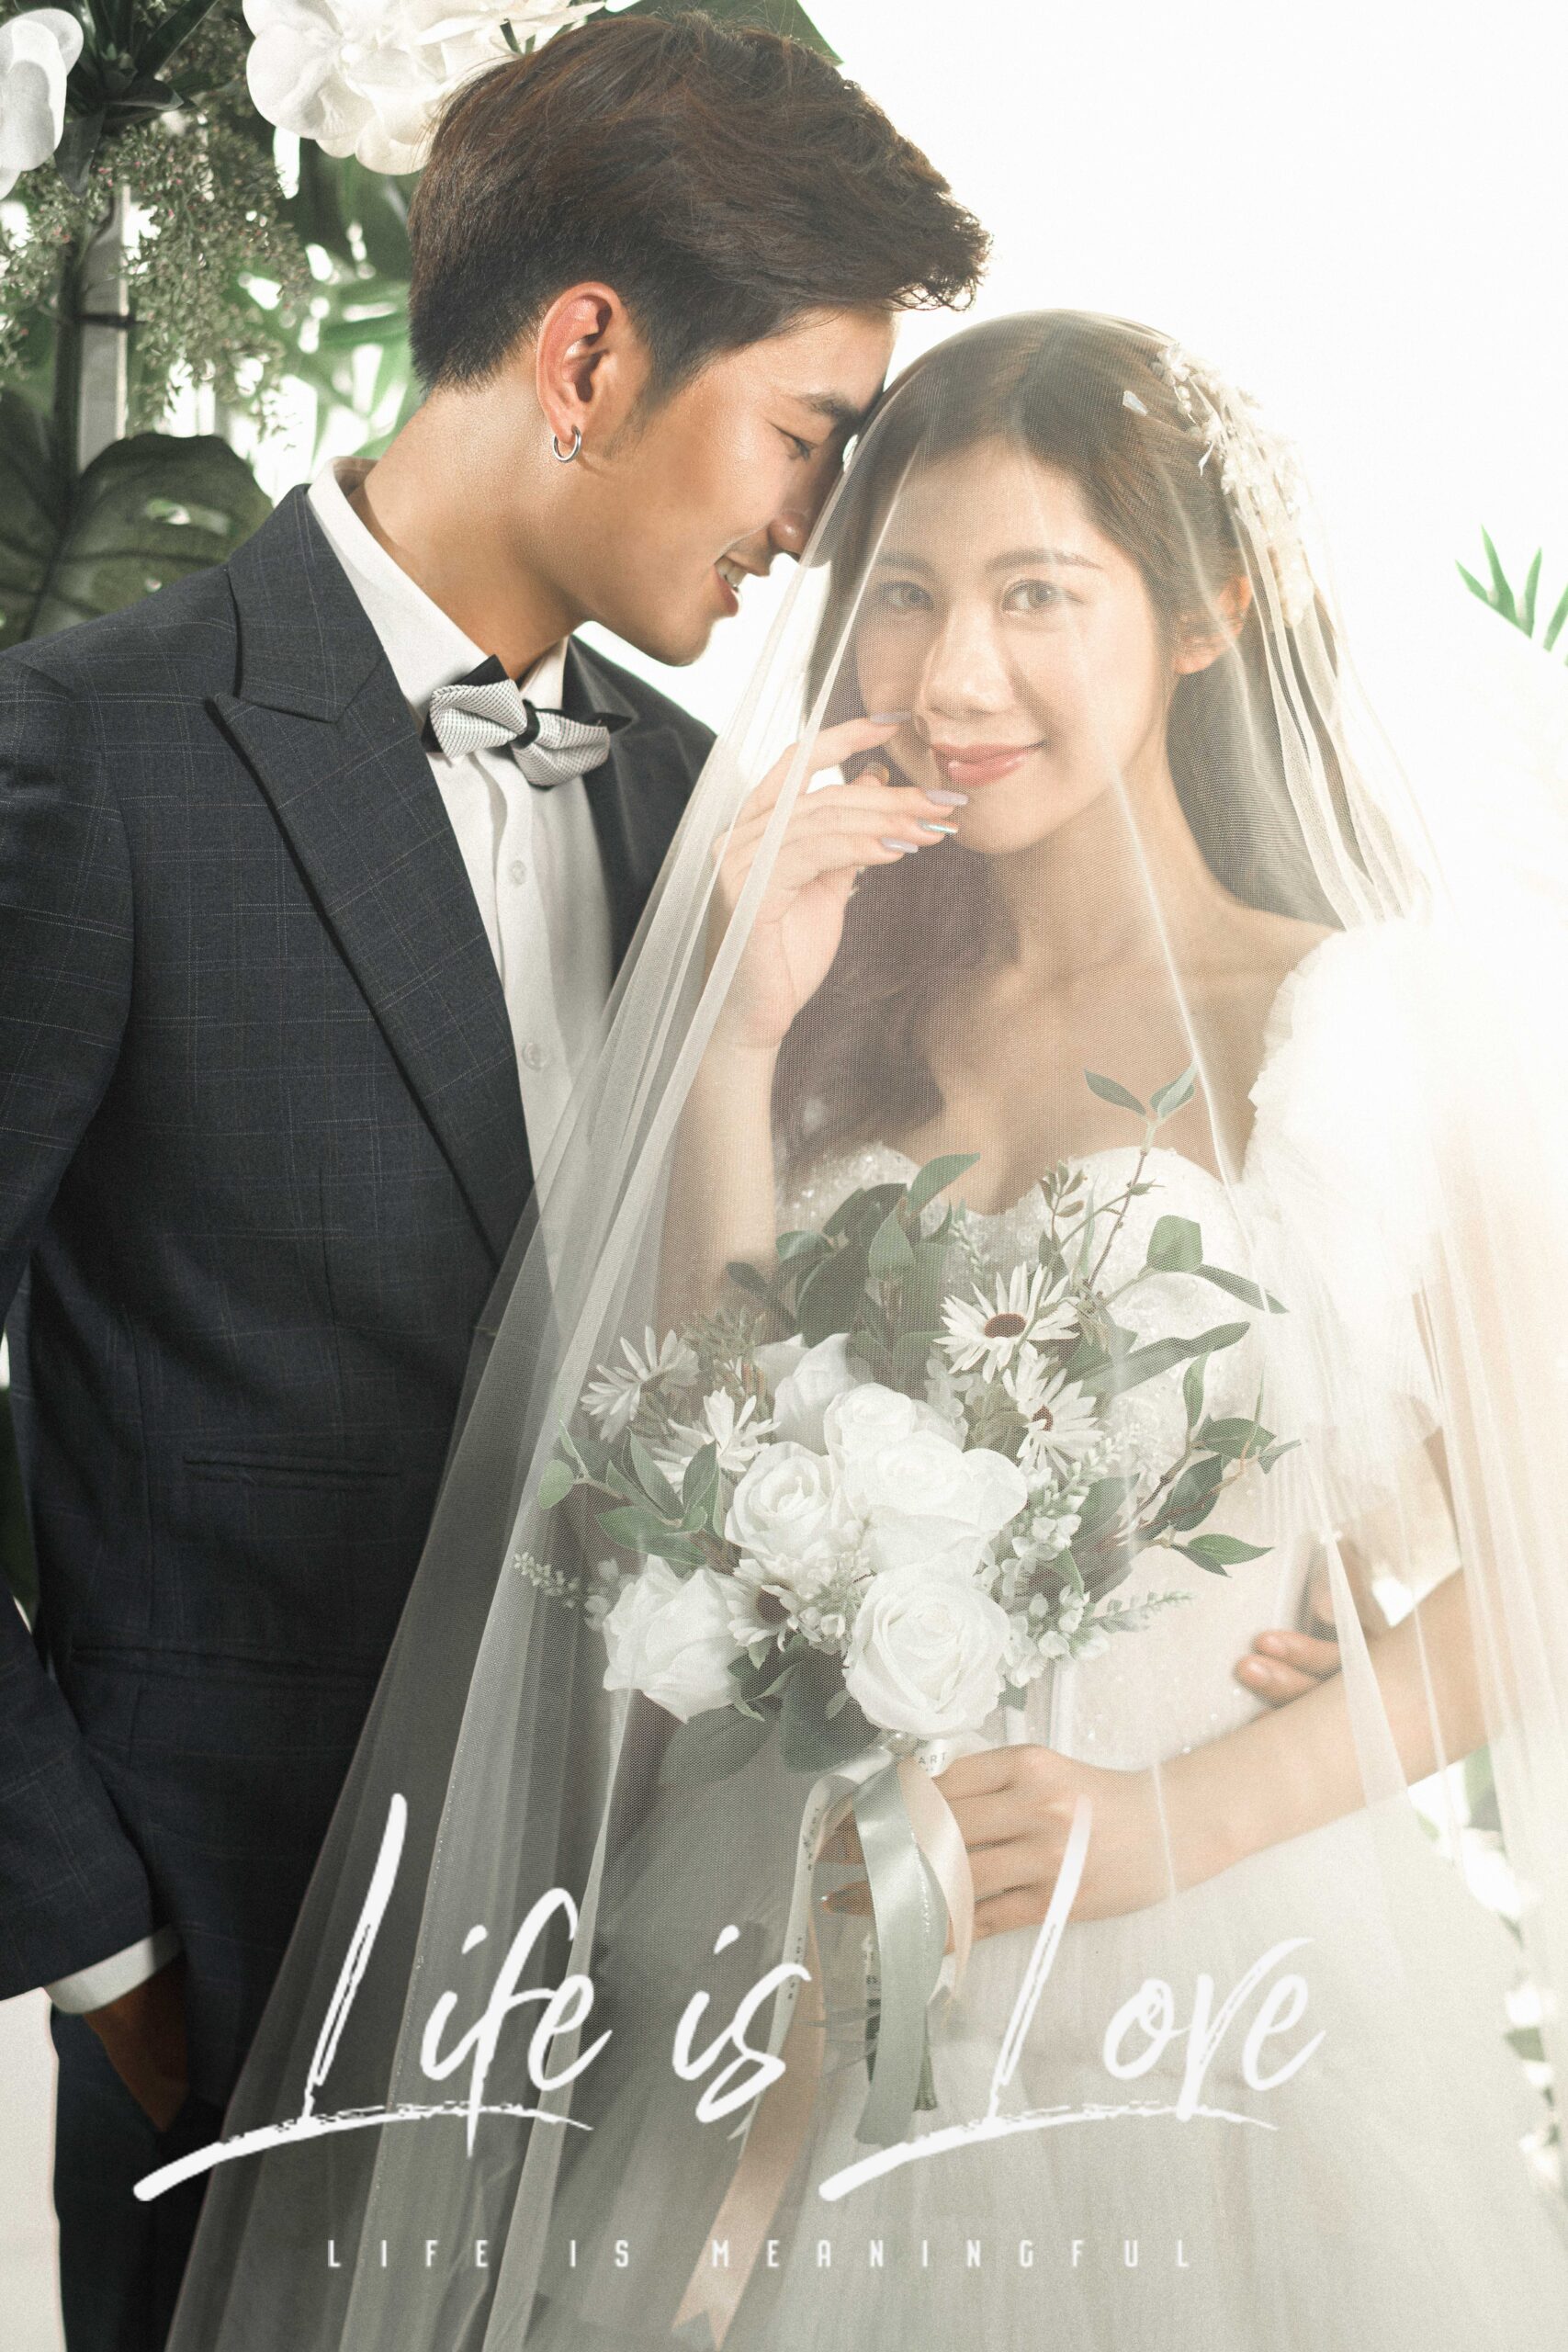 Bảng giá trọn gói chụp ảnh cưới studio tại Hà Nội giá rẻ uy tín